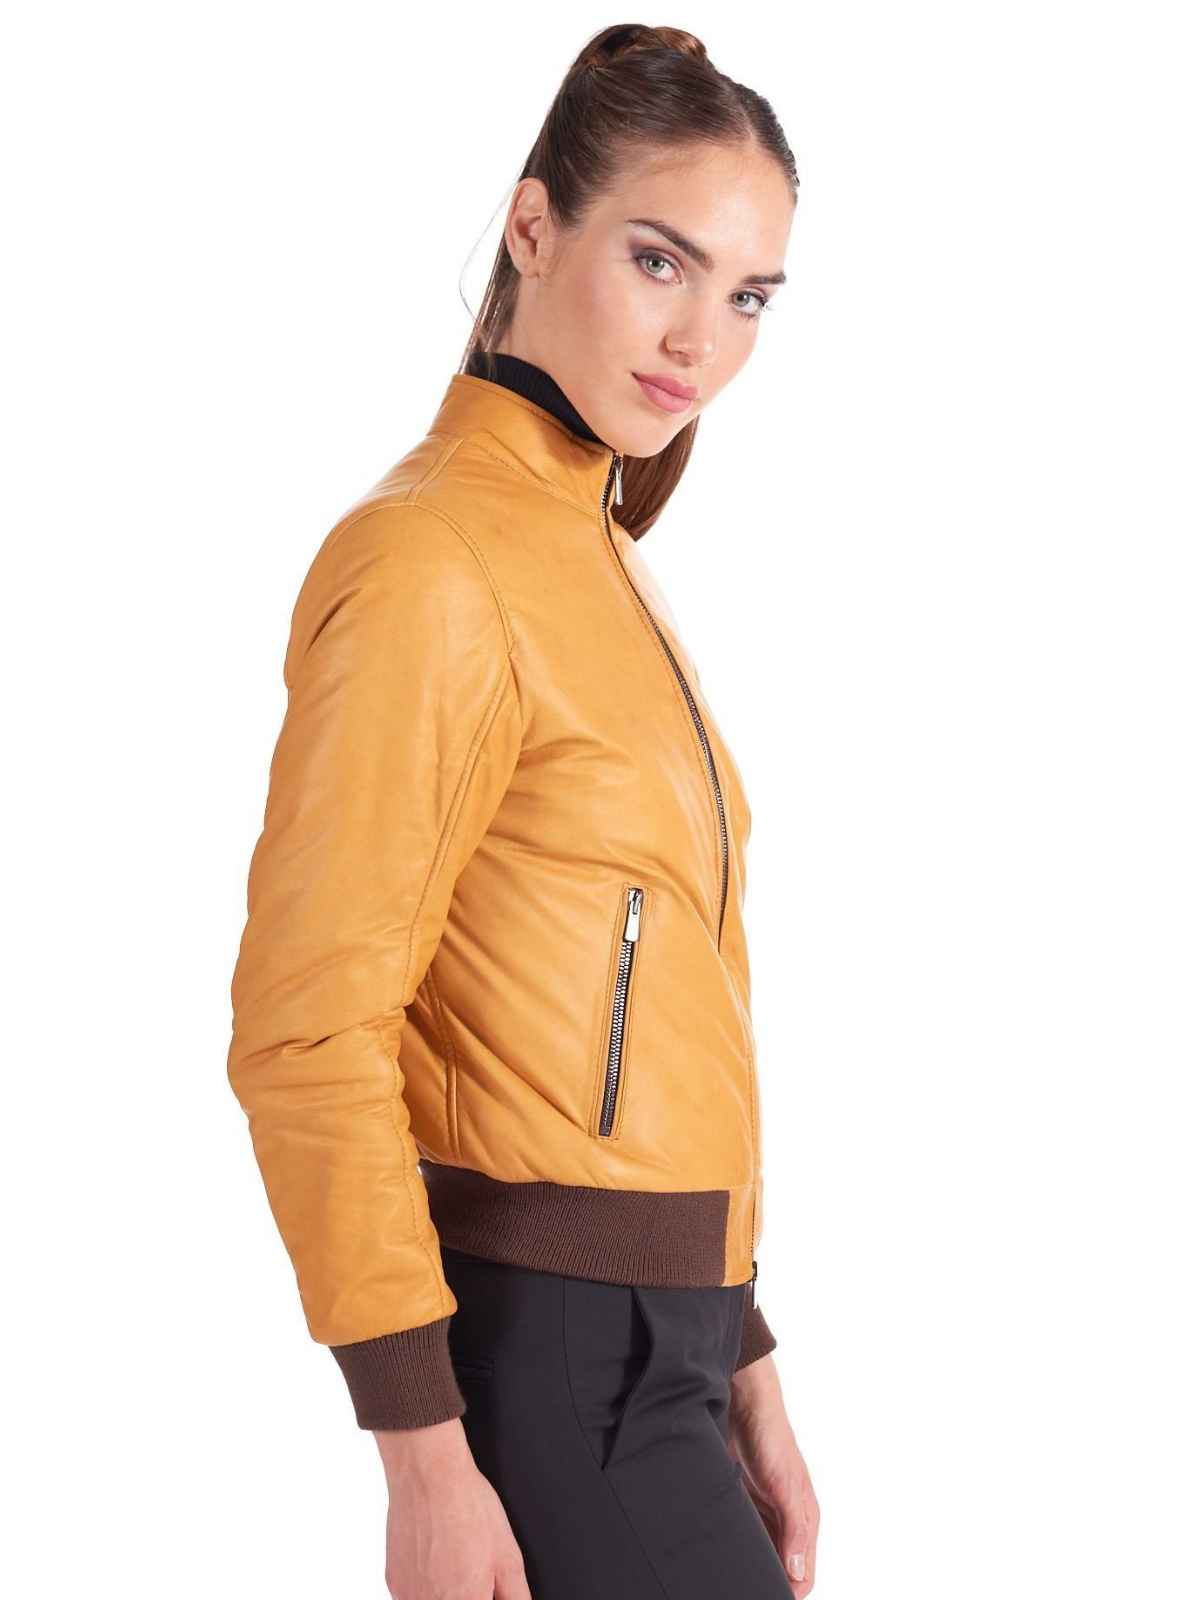 Womens Stylish genuine leather Bomber Jacket - LJ